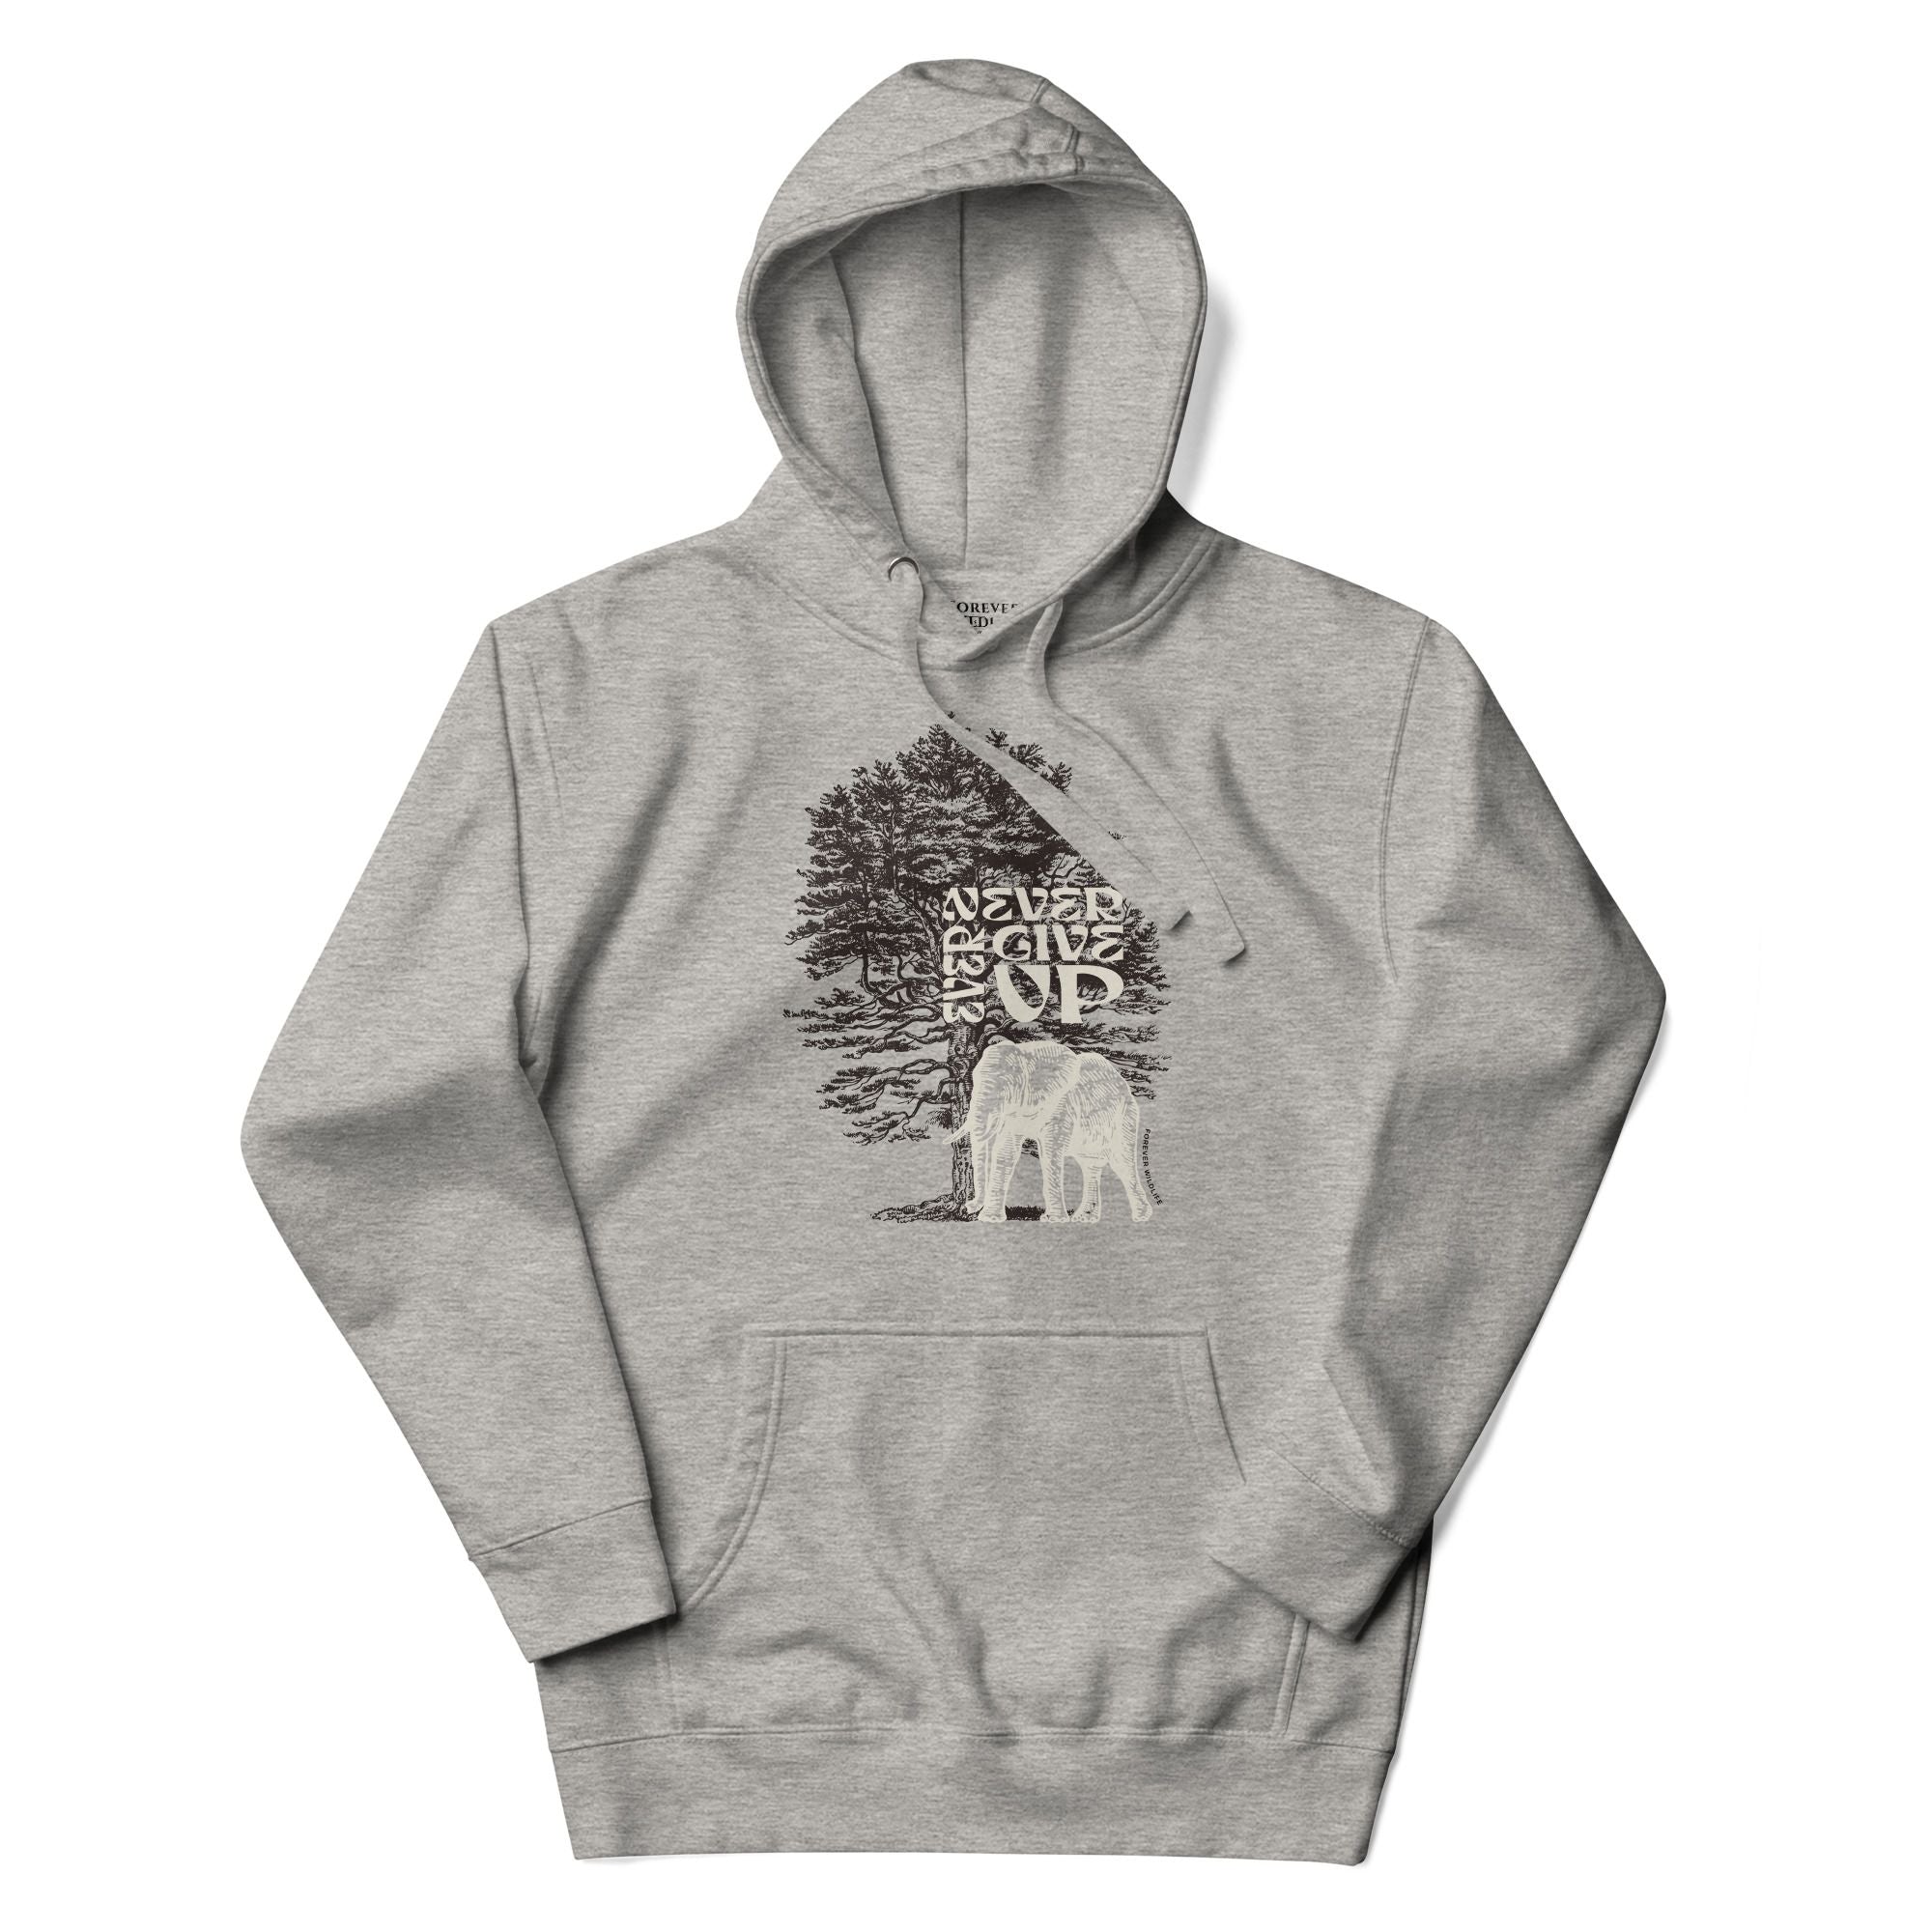 Elephant Hoodie in Grey – Premium Wildlife Animal Inspirational Hoodie Design, part of Wildlife Hoodies & Clothing from Forever Wildlife